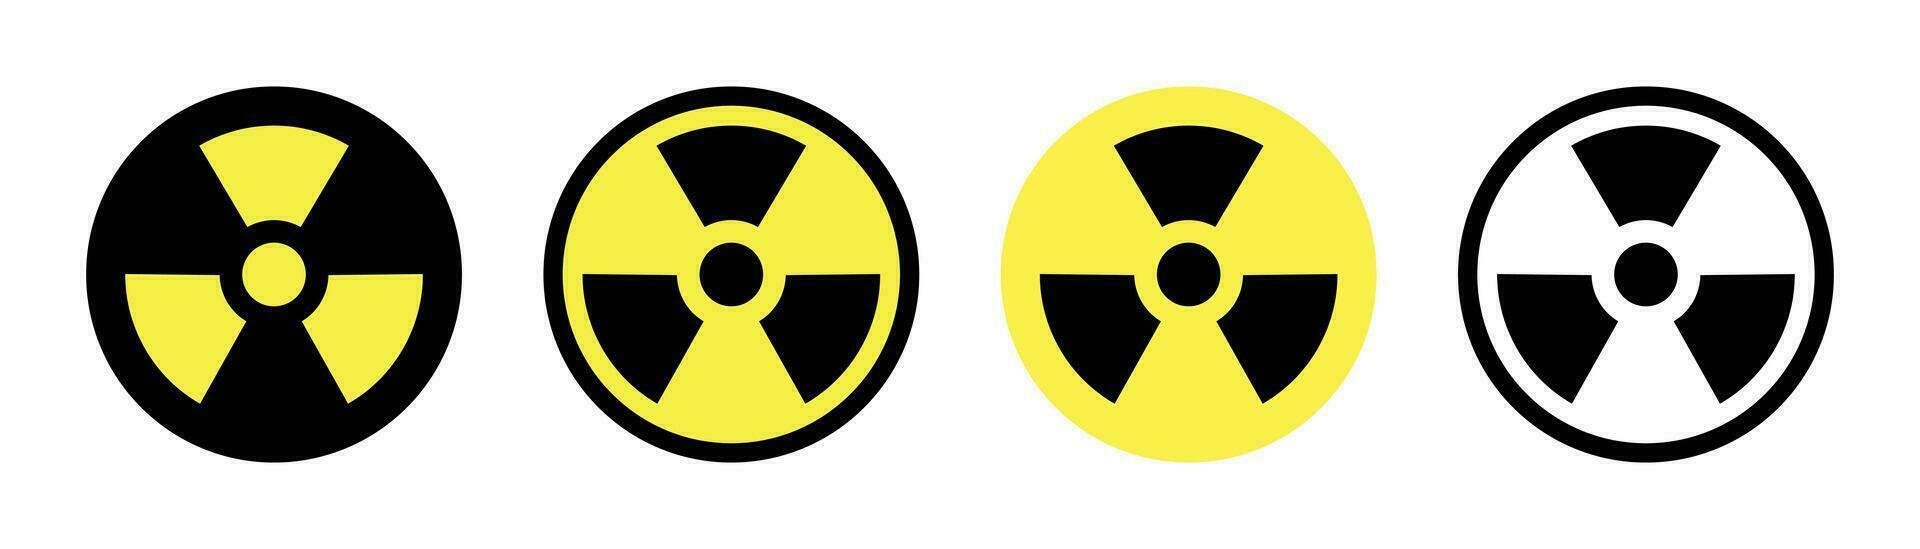 strålning varna tecken. kärn ikon i svart och gul. strålning symbol. kärn tecken uppsättning. fara symbol i cirkel. strålning ikon. gul kärn varna vektor